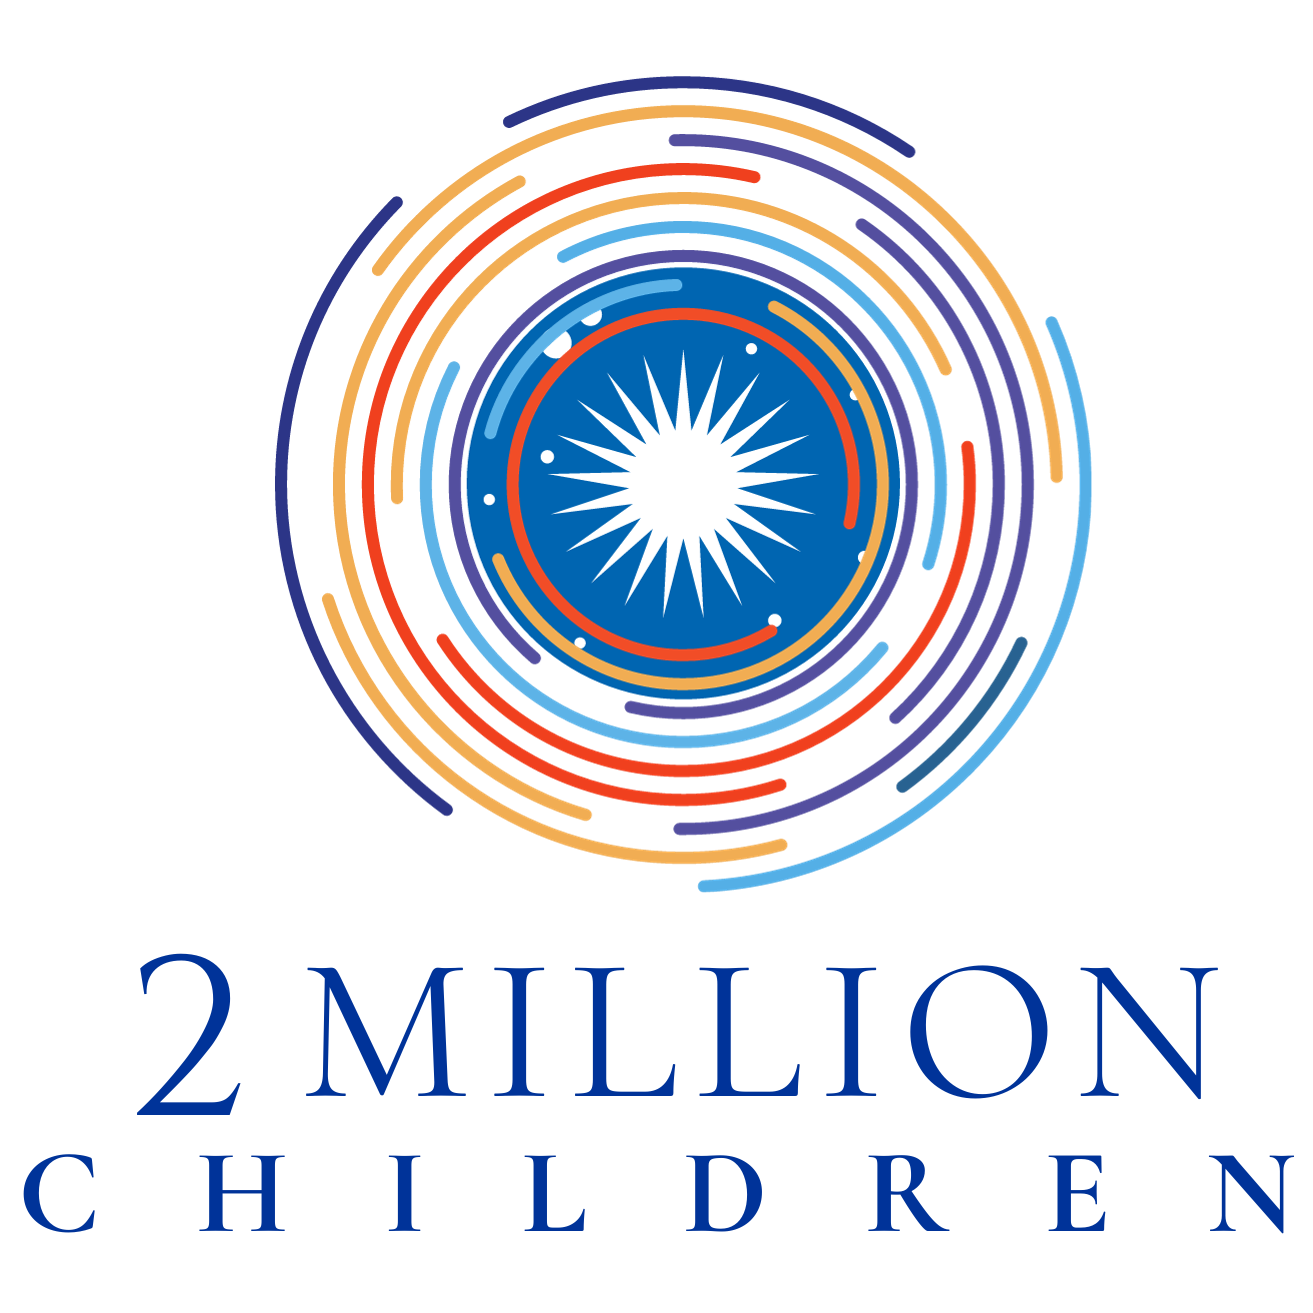 2 MILLION CHILDREN